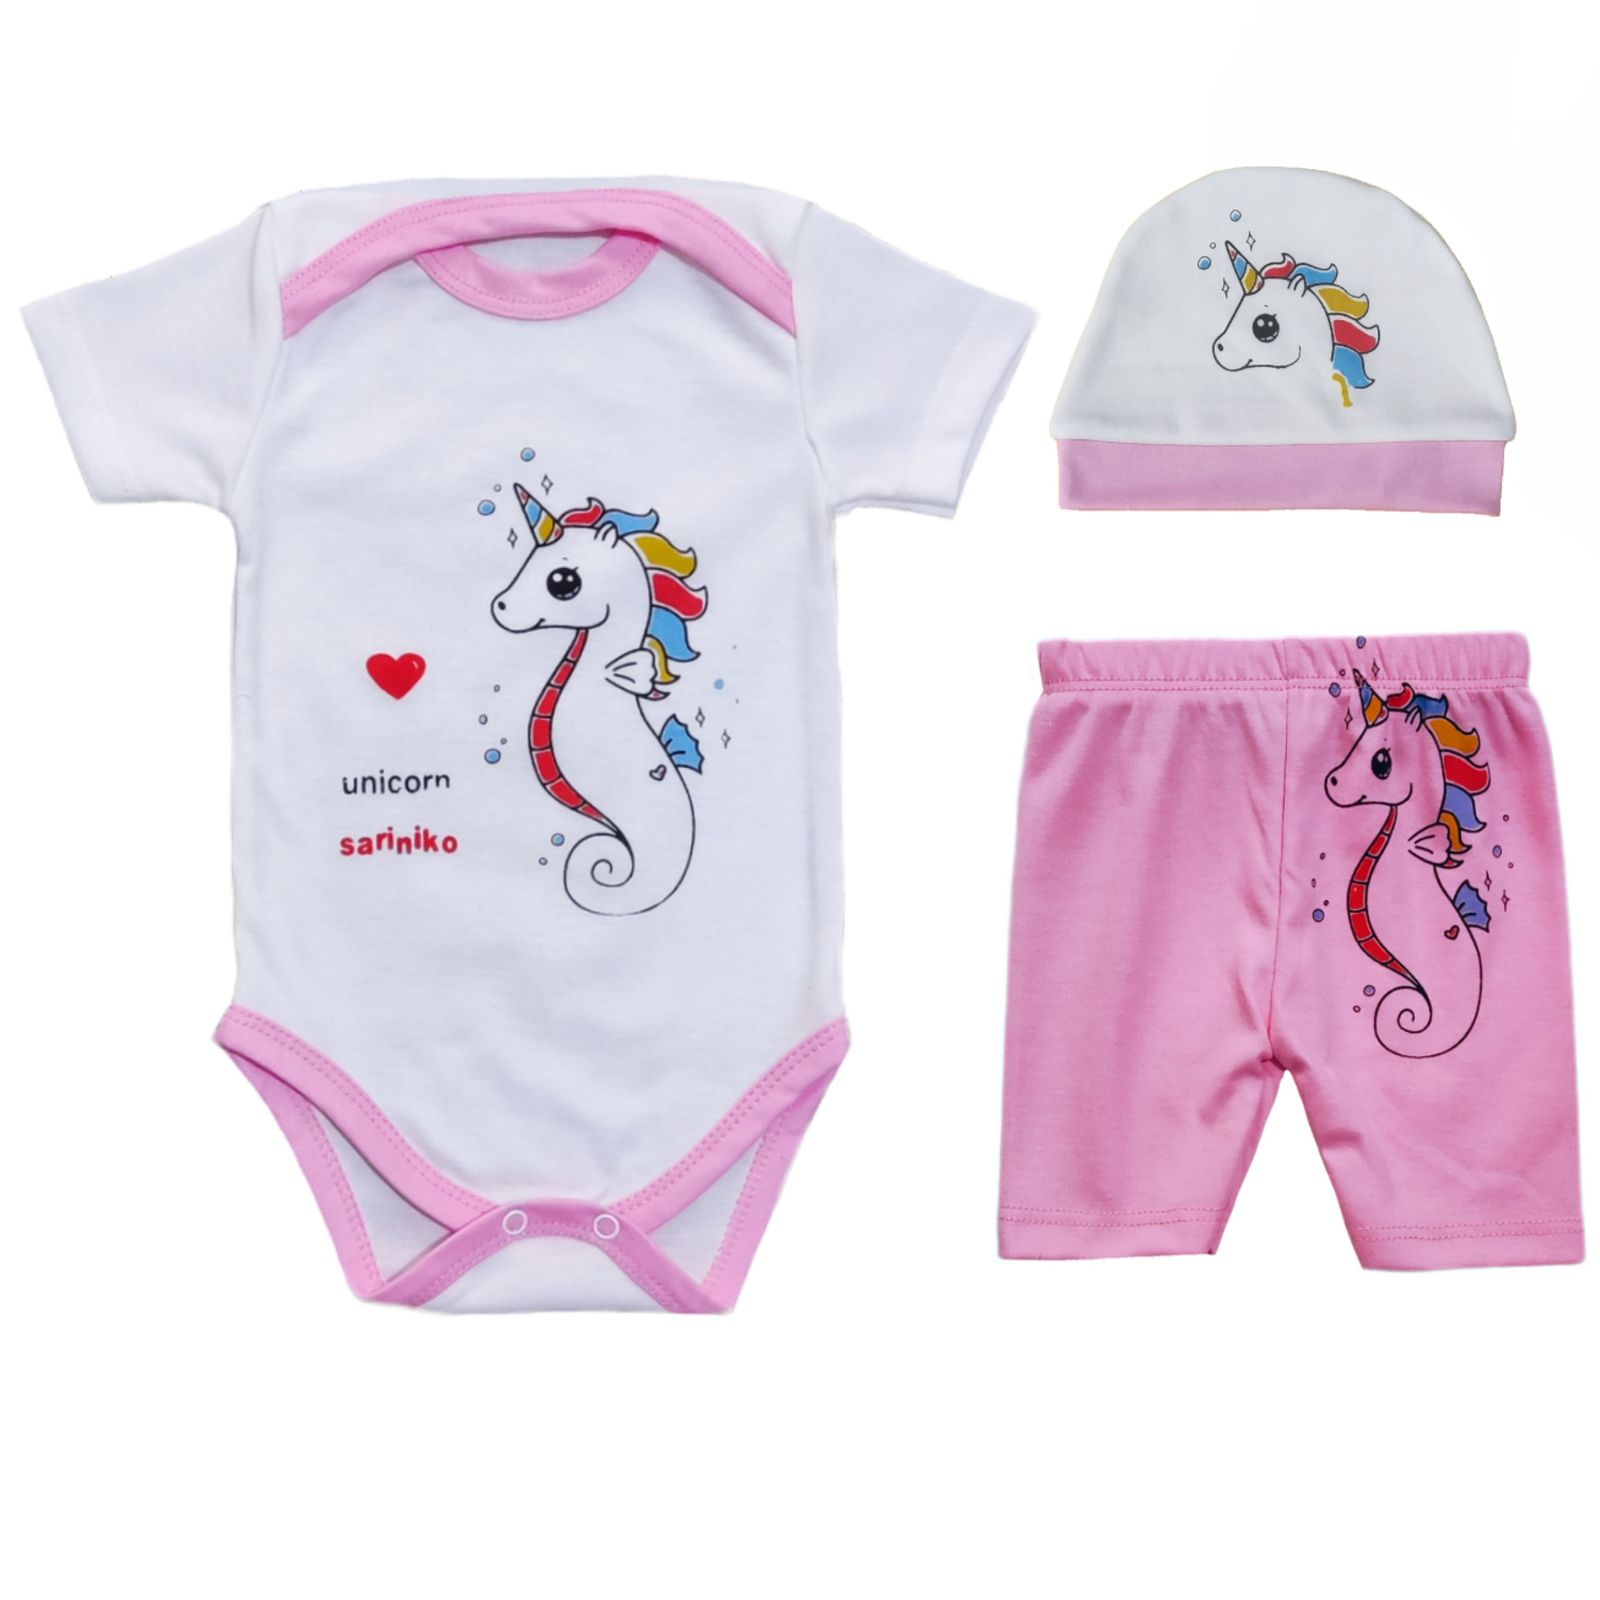 ست 3 تکه لباس نوزادی سرینیکو مدل Unicorn کد B03 -  - 7